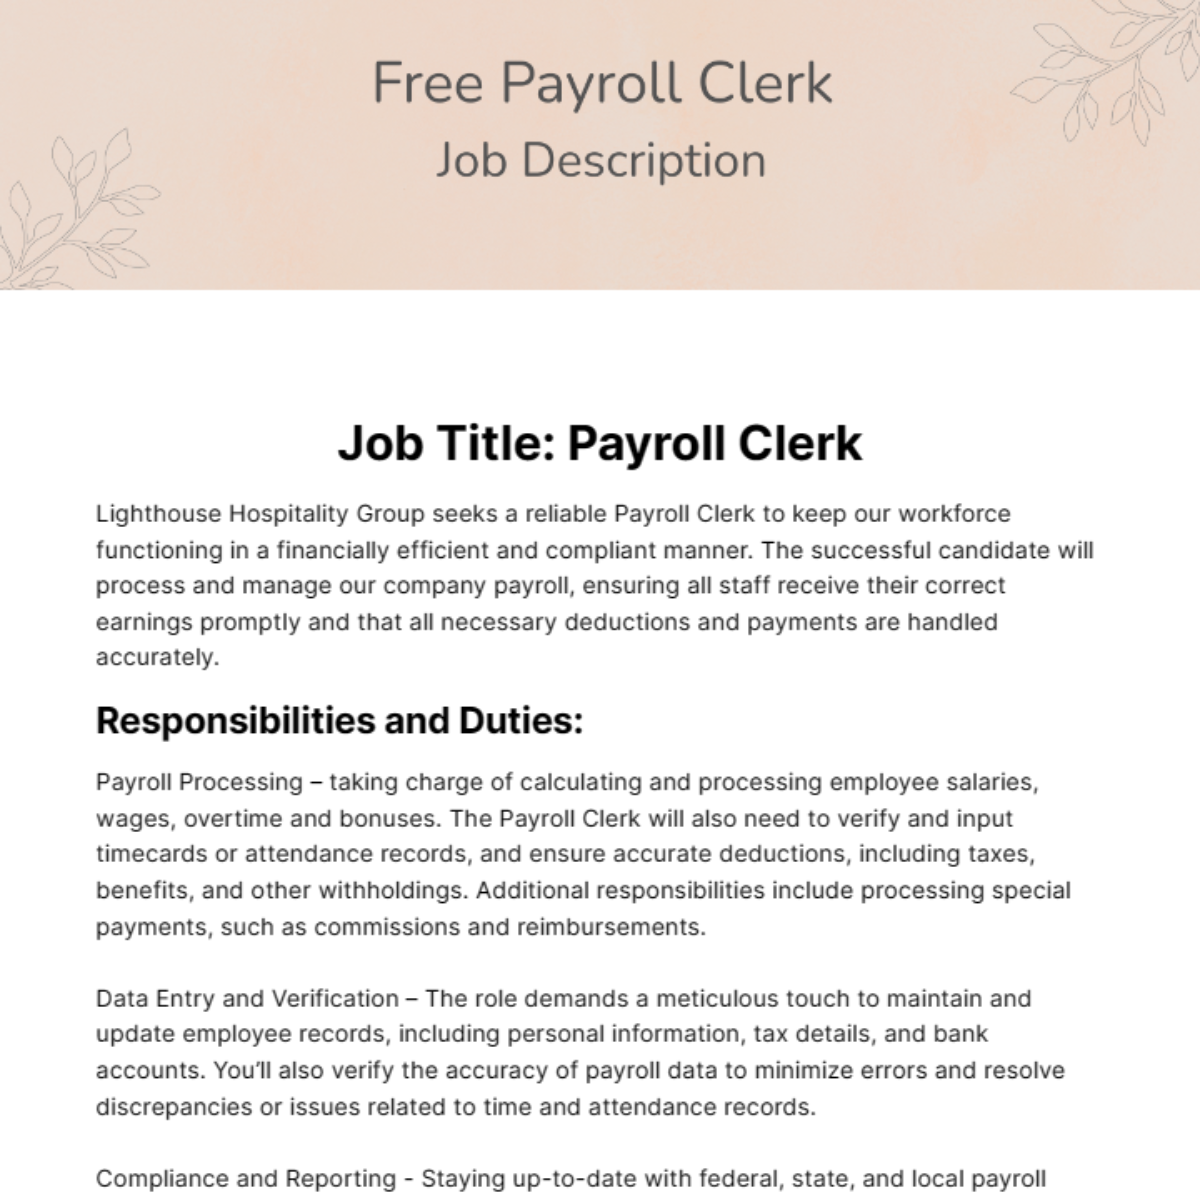 Free Payroll Clerk Job Description Template